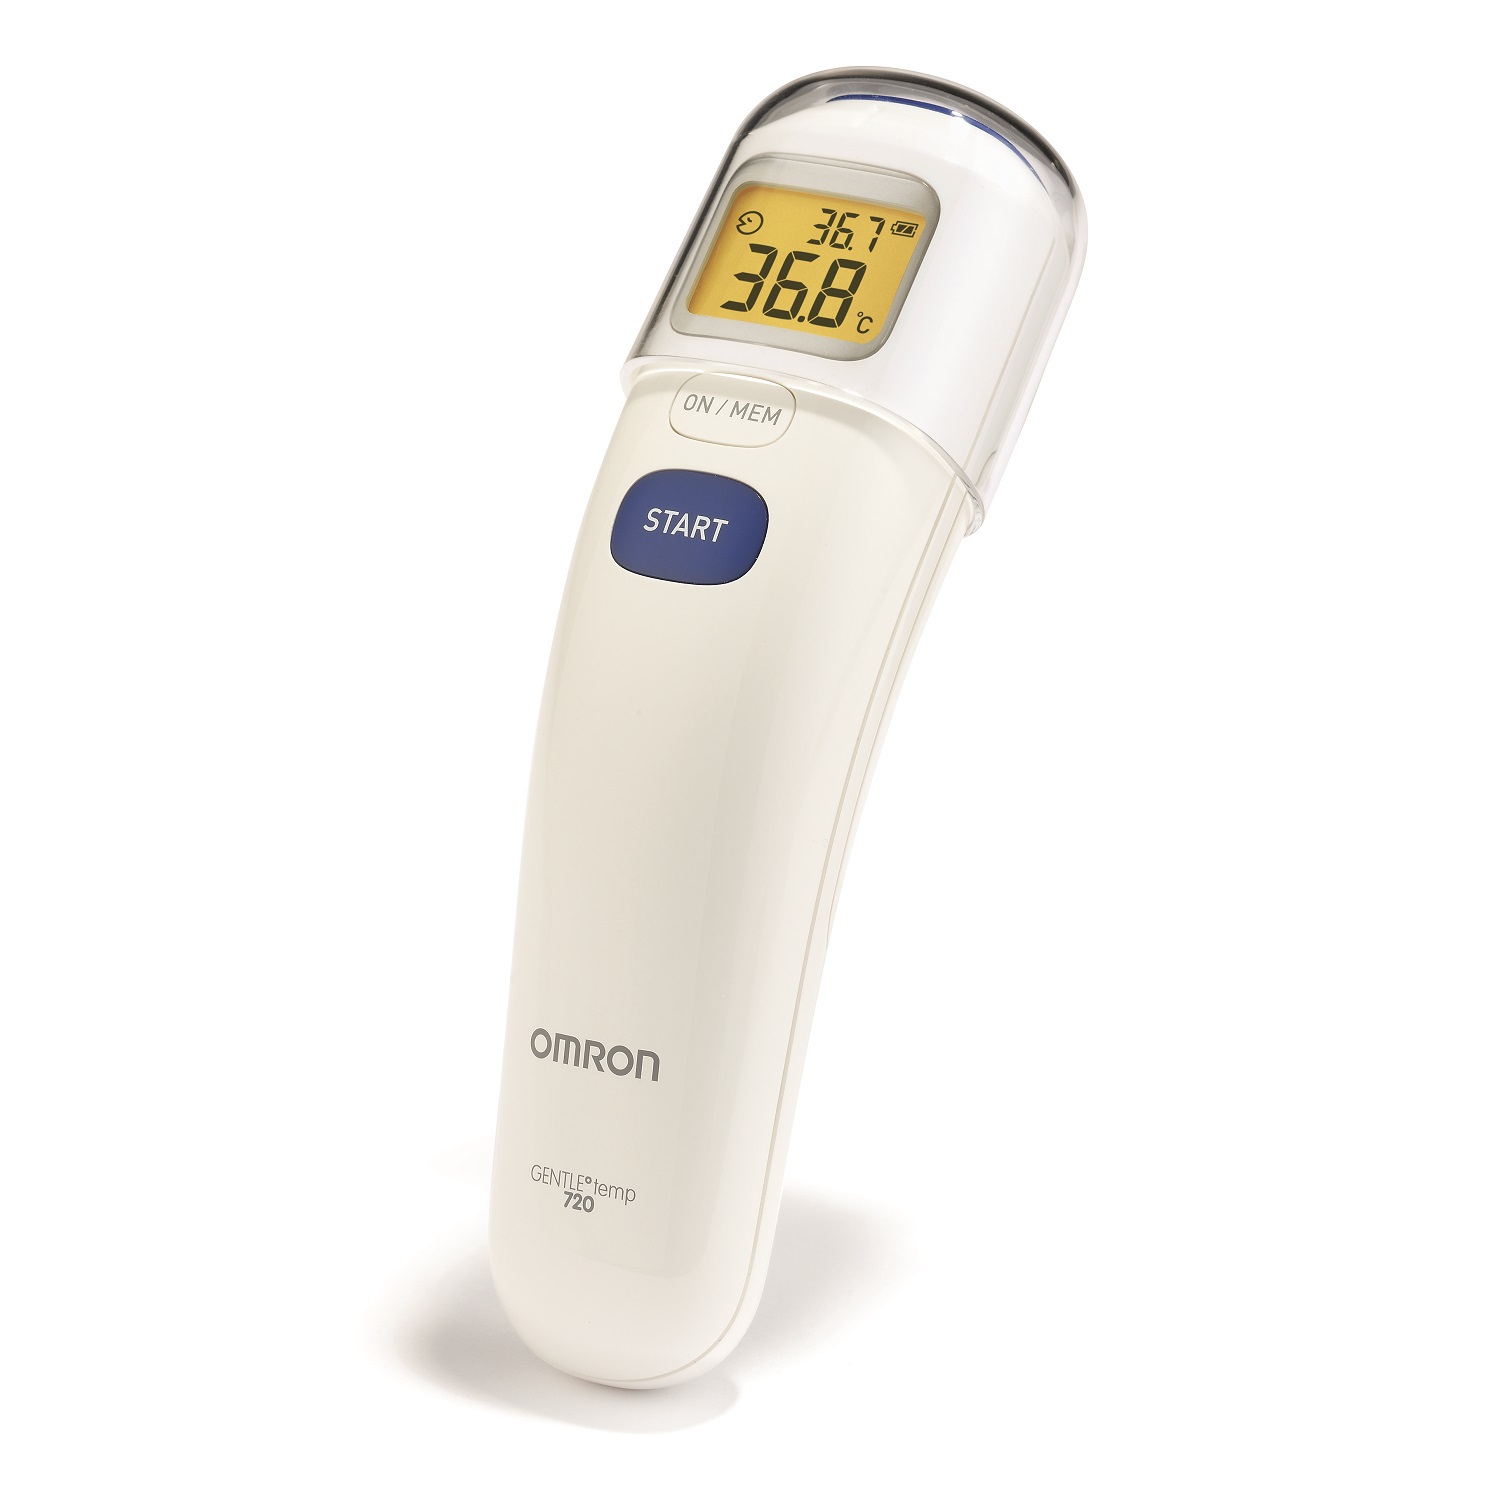 Omron термометр Gentle Temp 720 MC-720-E термометр электронный omron gentle temp 720 mc 720 e инфракрасный память звуковой сигнал белый